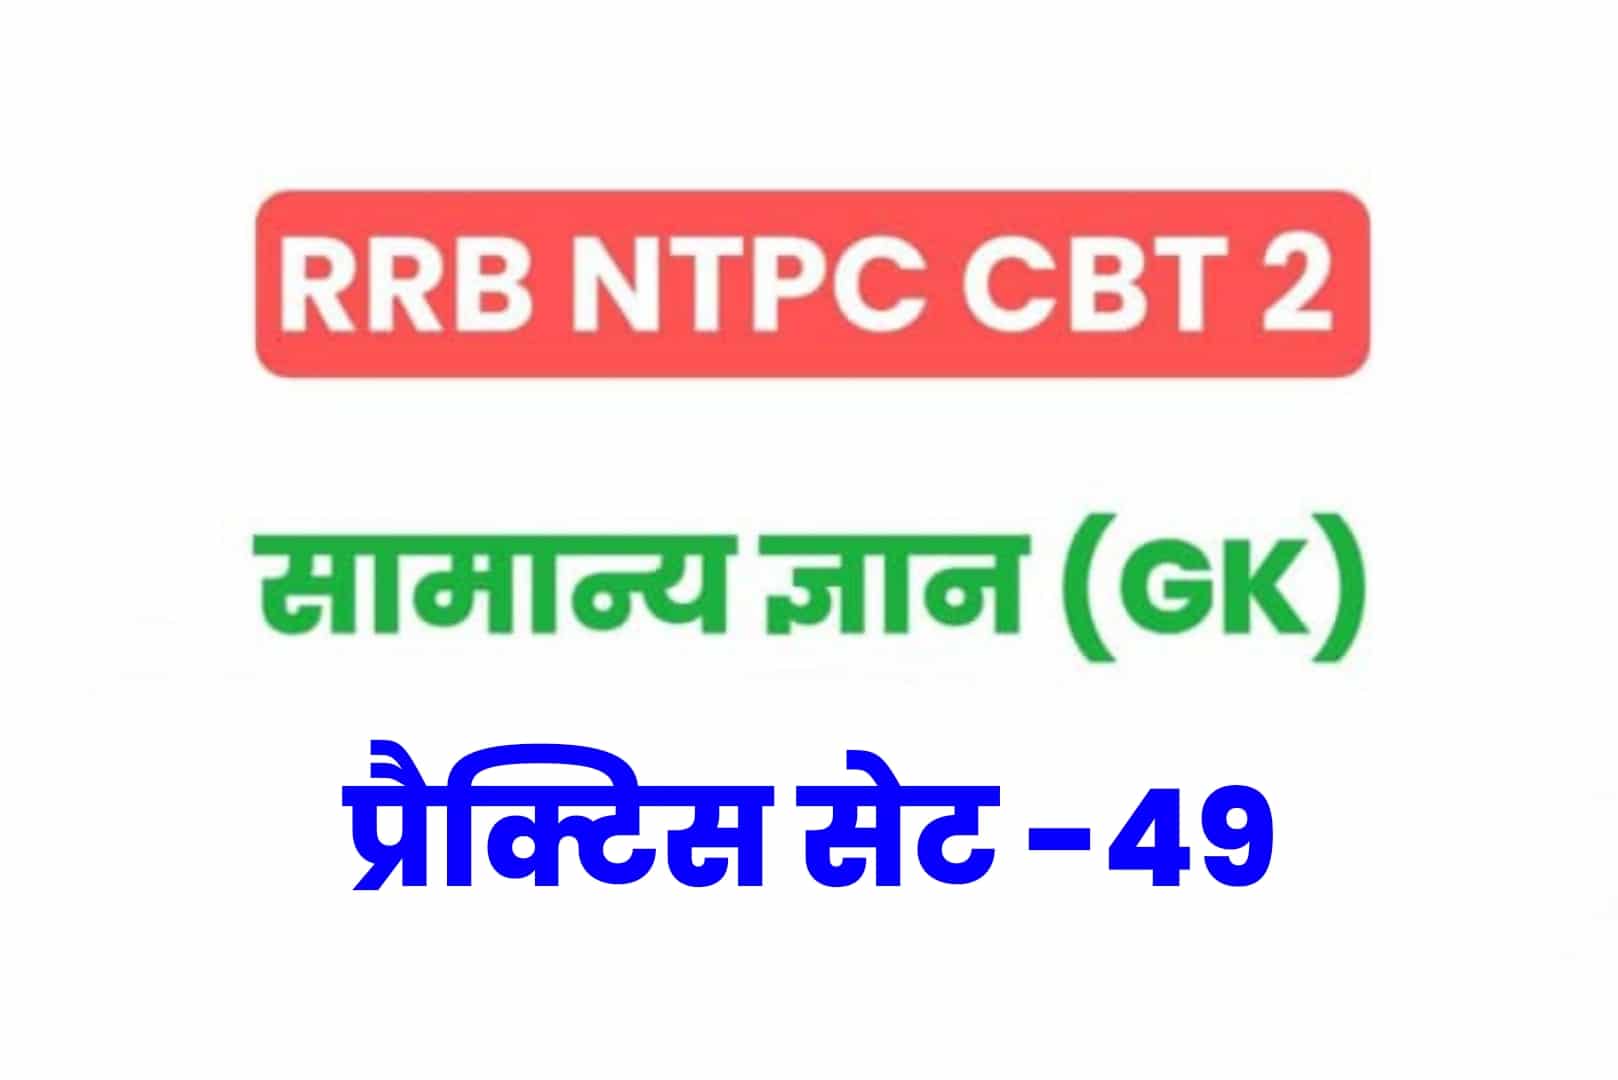 RRB NTPC CBT 2 GK प्रैक्टिस सेट 49: परीक्षा होने से पूर्व अवश्य पढ़ें सामान्य ज्ञान के 25 मुख्य MCQ